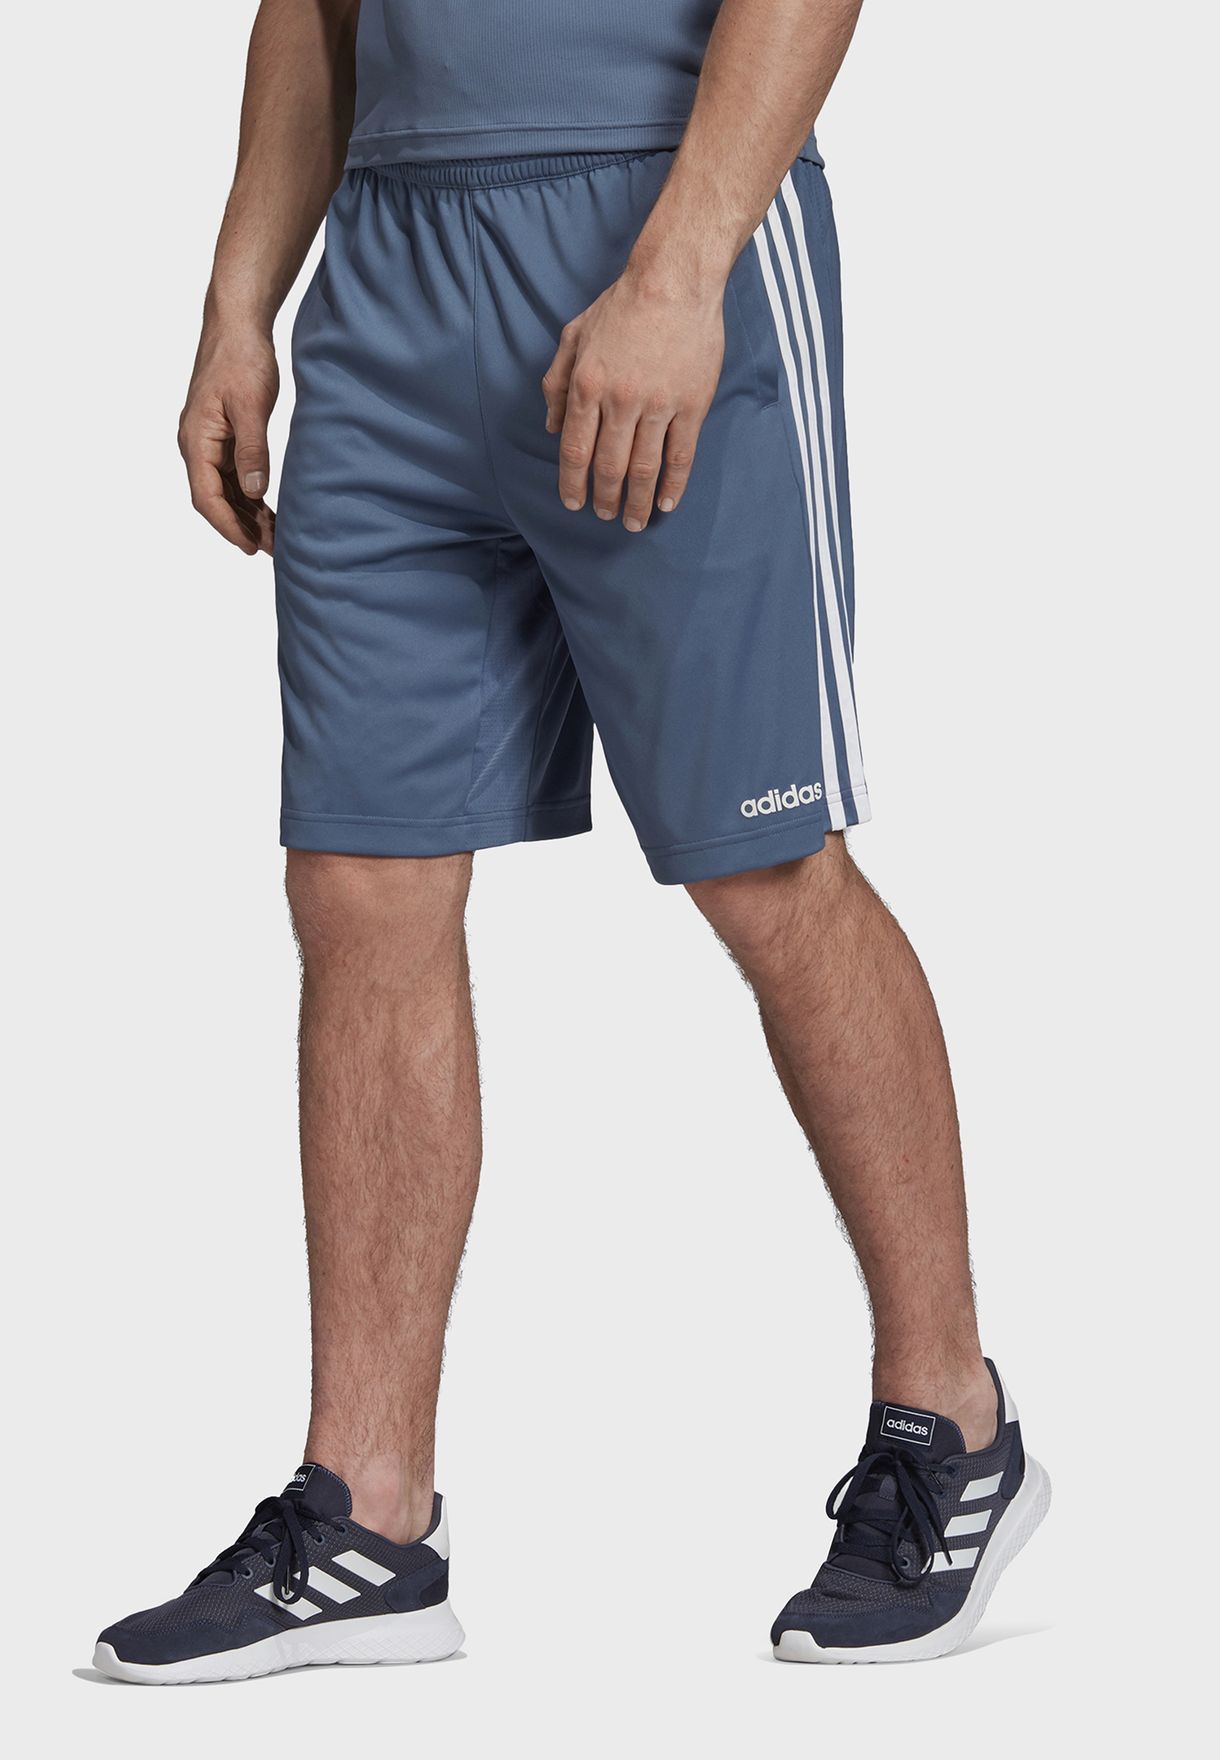 adidas 3 stripe climacool training shorts